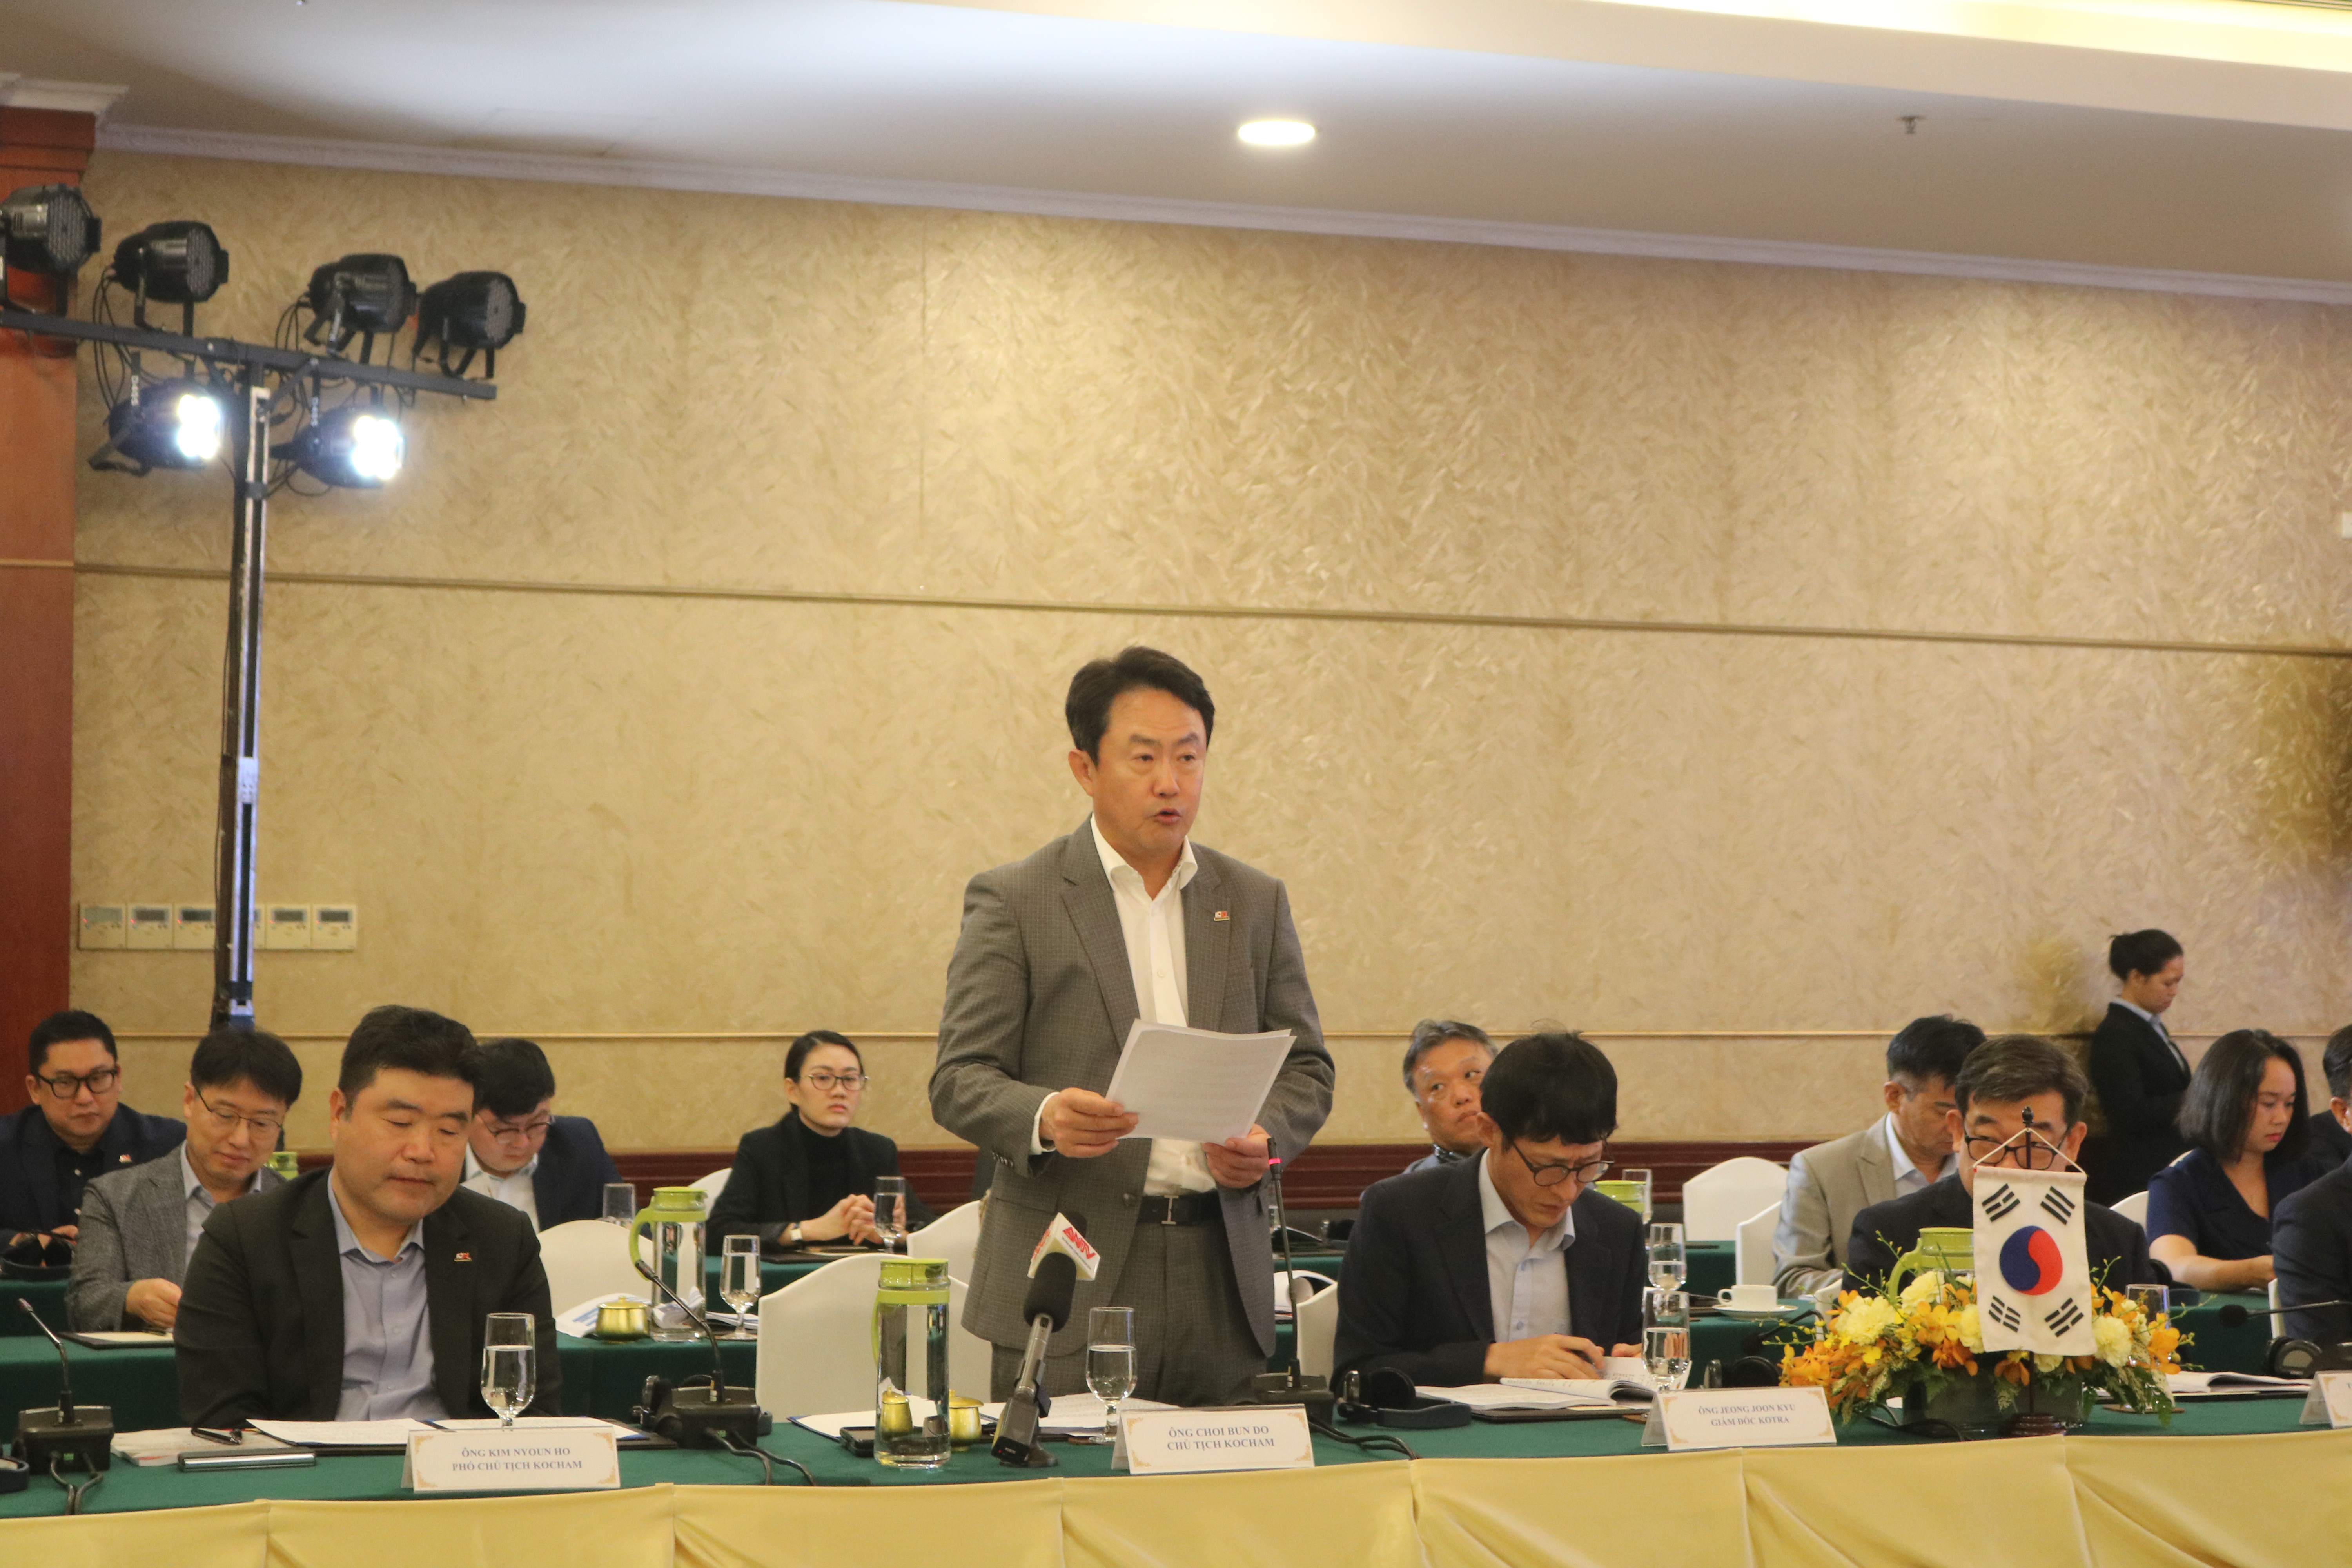 Ong Choi Bun Do - Chủ tịch Hiệp hội Thương mại v&agrave; c&ocirc;ng nghiệp H&agrave;n Quốc tại miền Trung v&agrave; miền Nam Việt Nam (KOCHAM) ph&aacute;t biểu tại hội nghị - Ảnh: PT